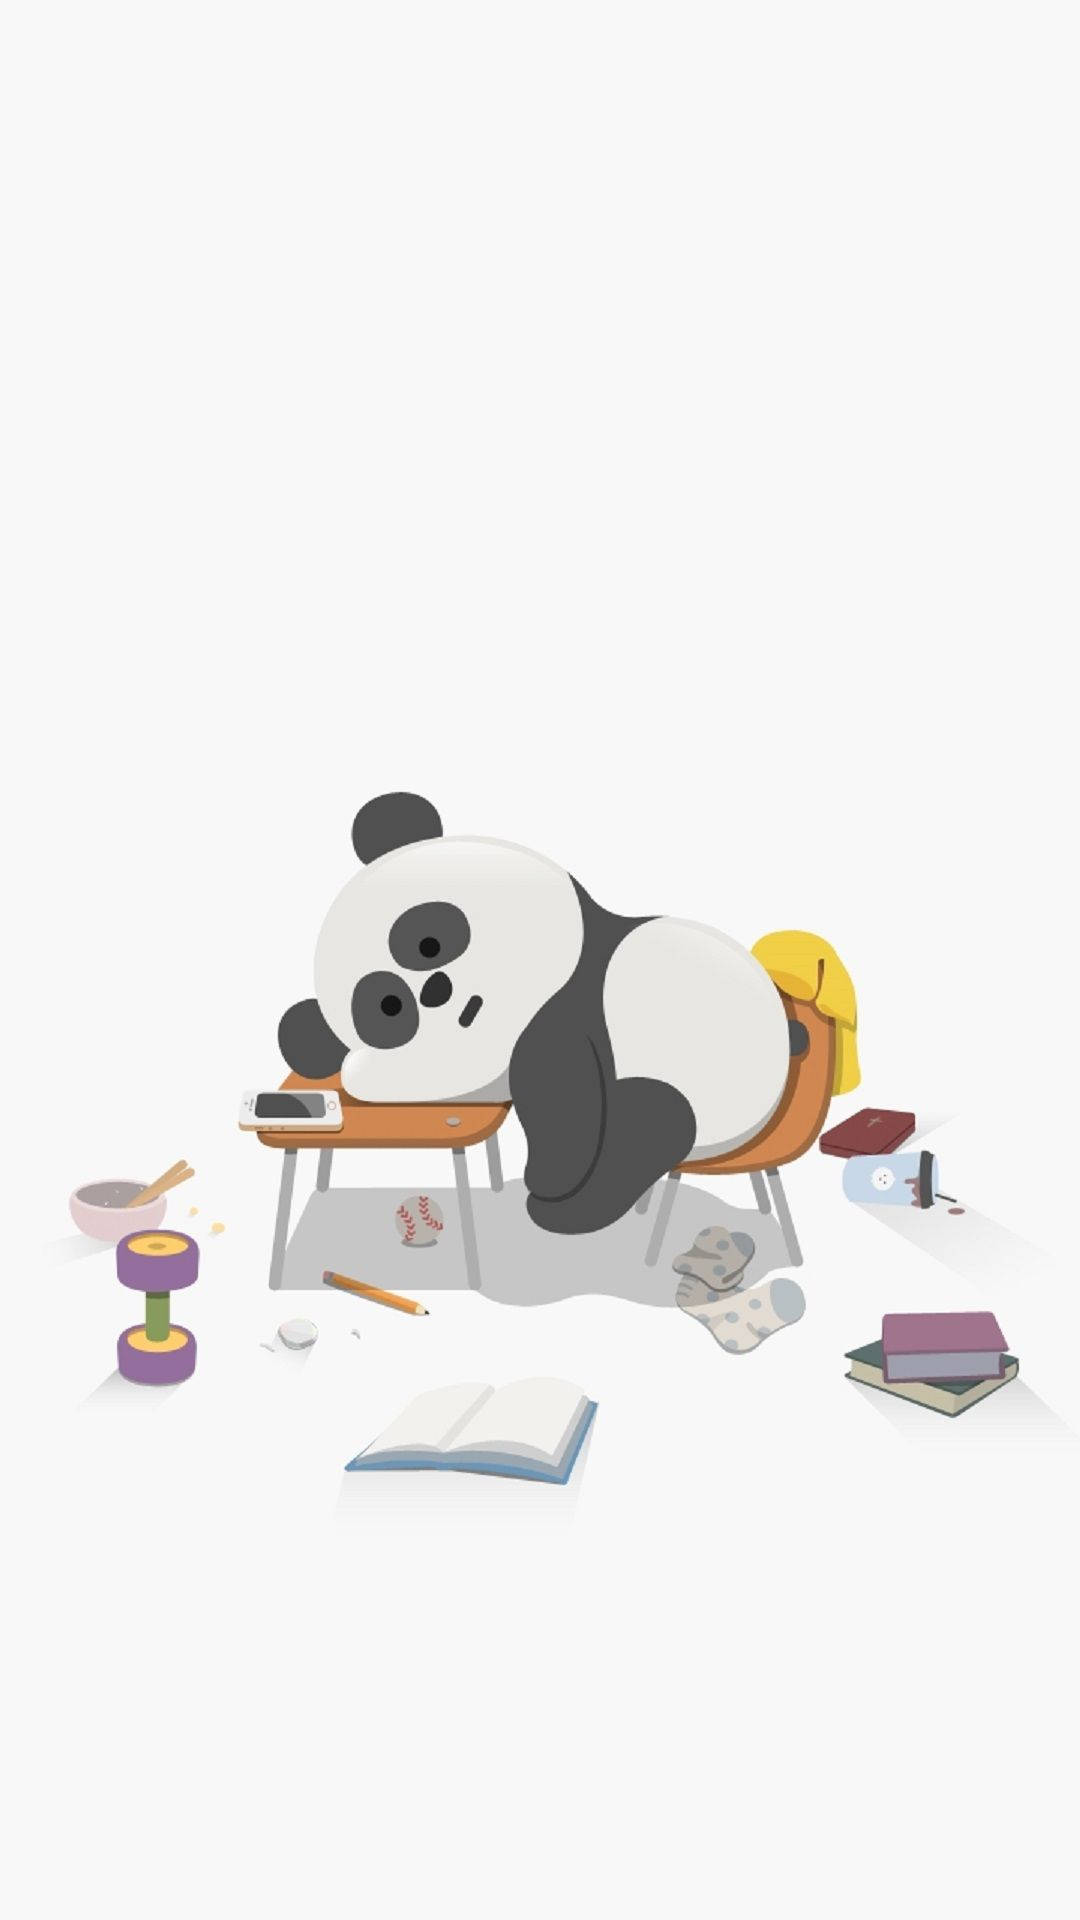 Sleeping Tired Panda Cartoon